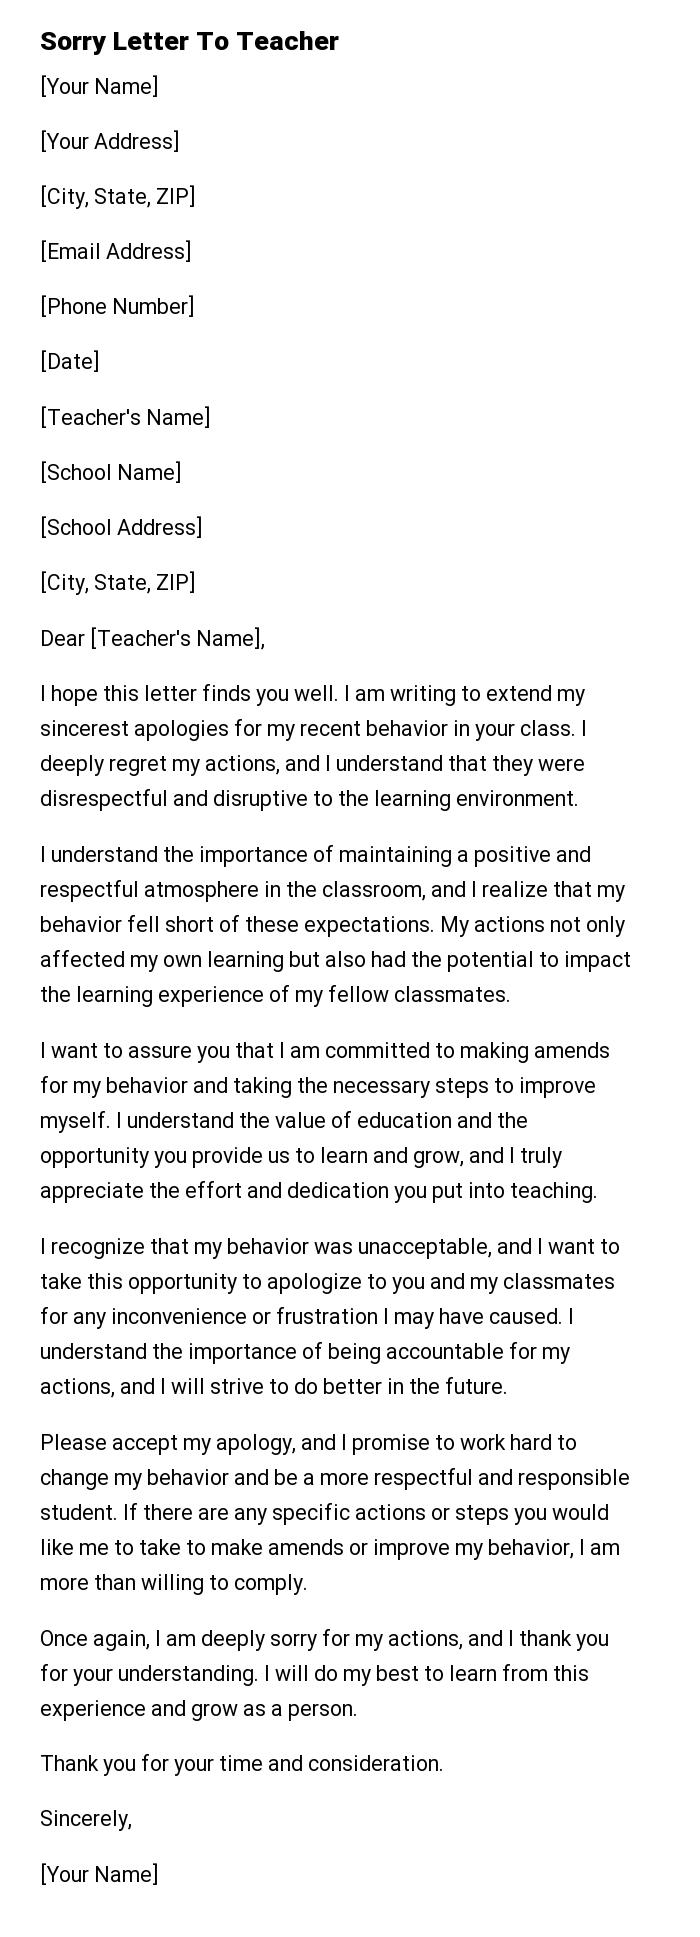 Sorry Letter To Teacher